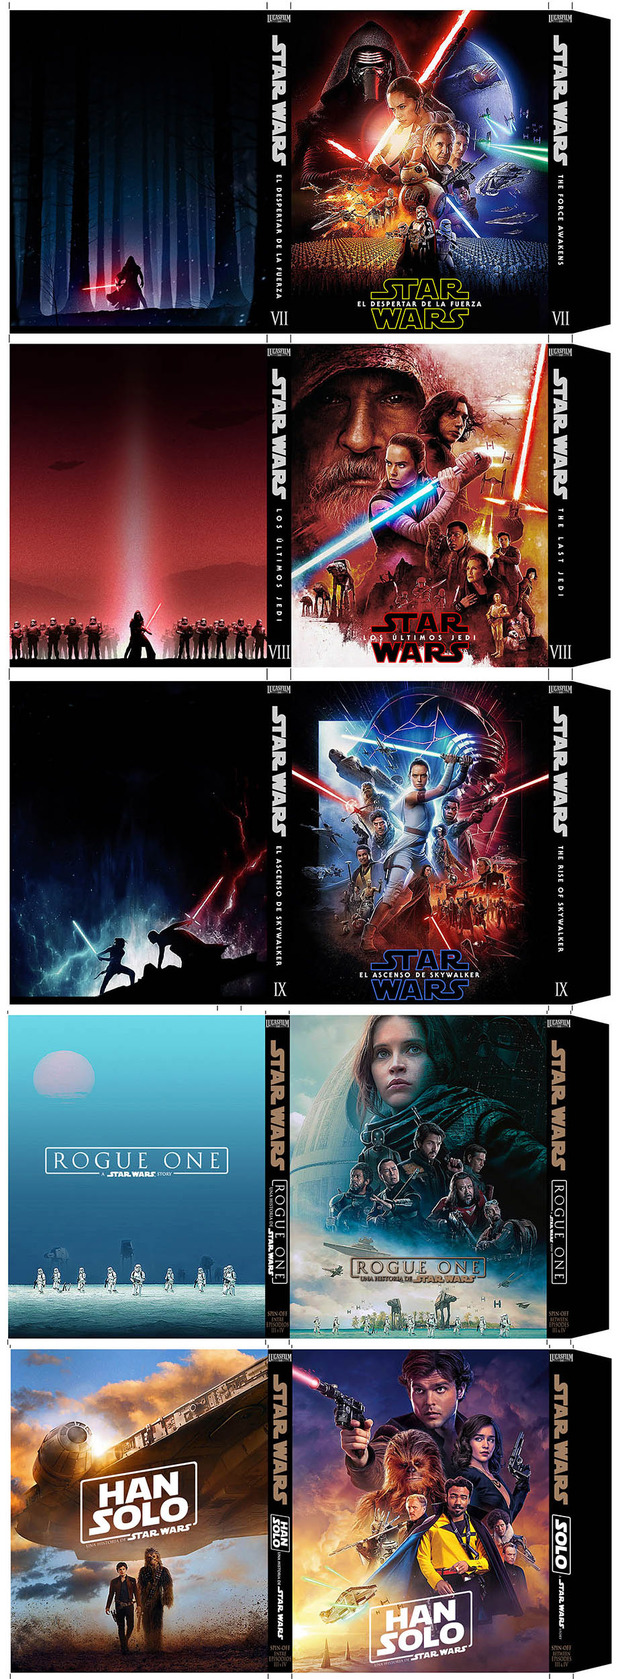 Star Wars - slipcover nueva trilogia y spin-off